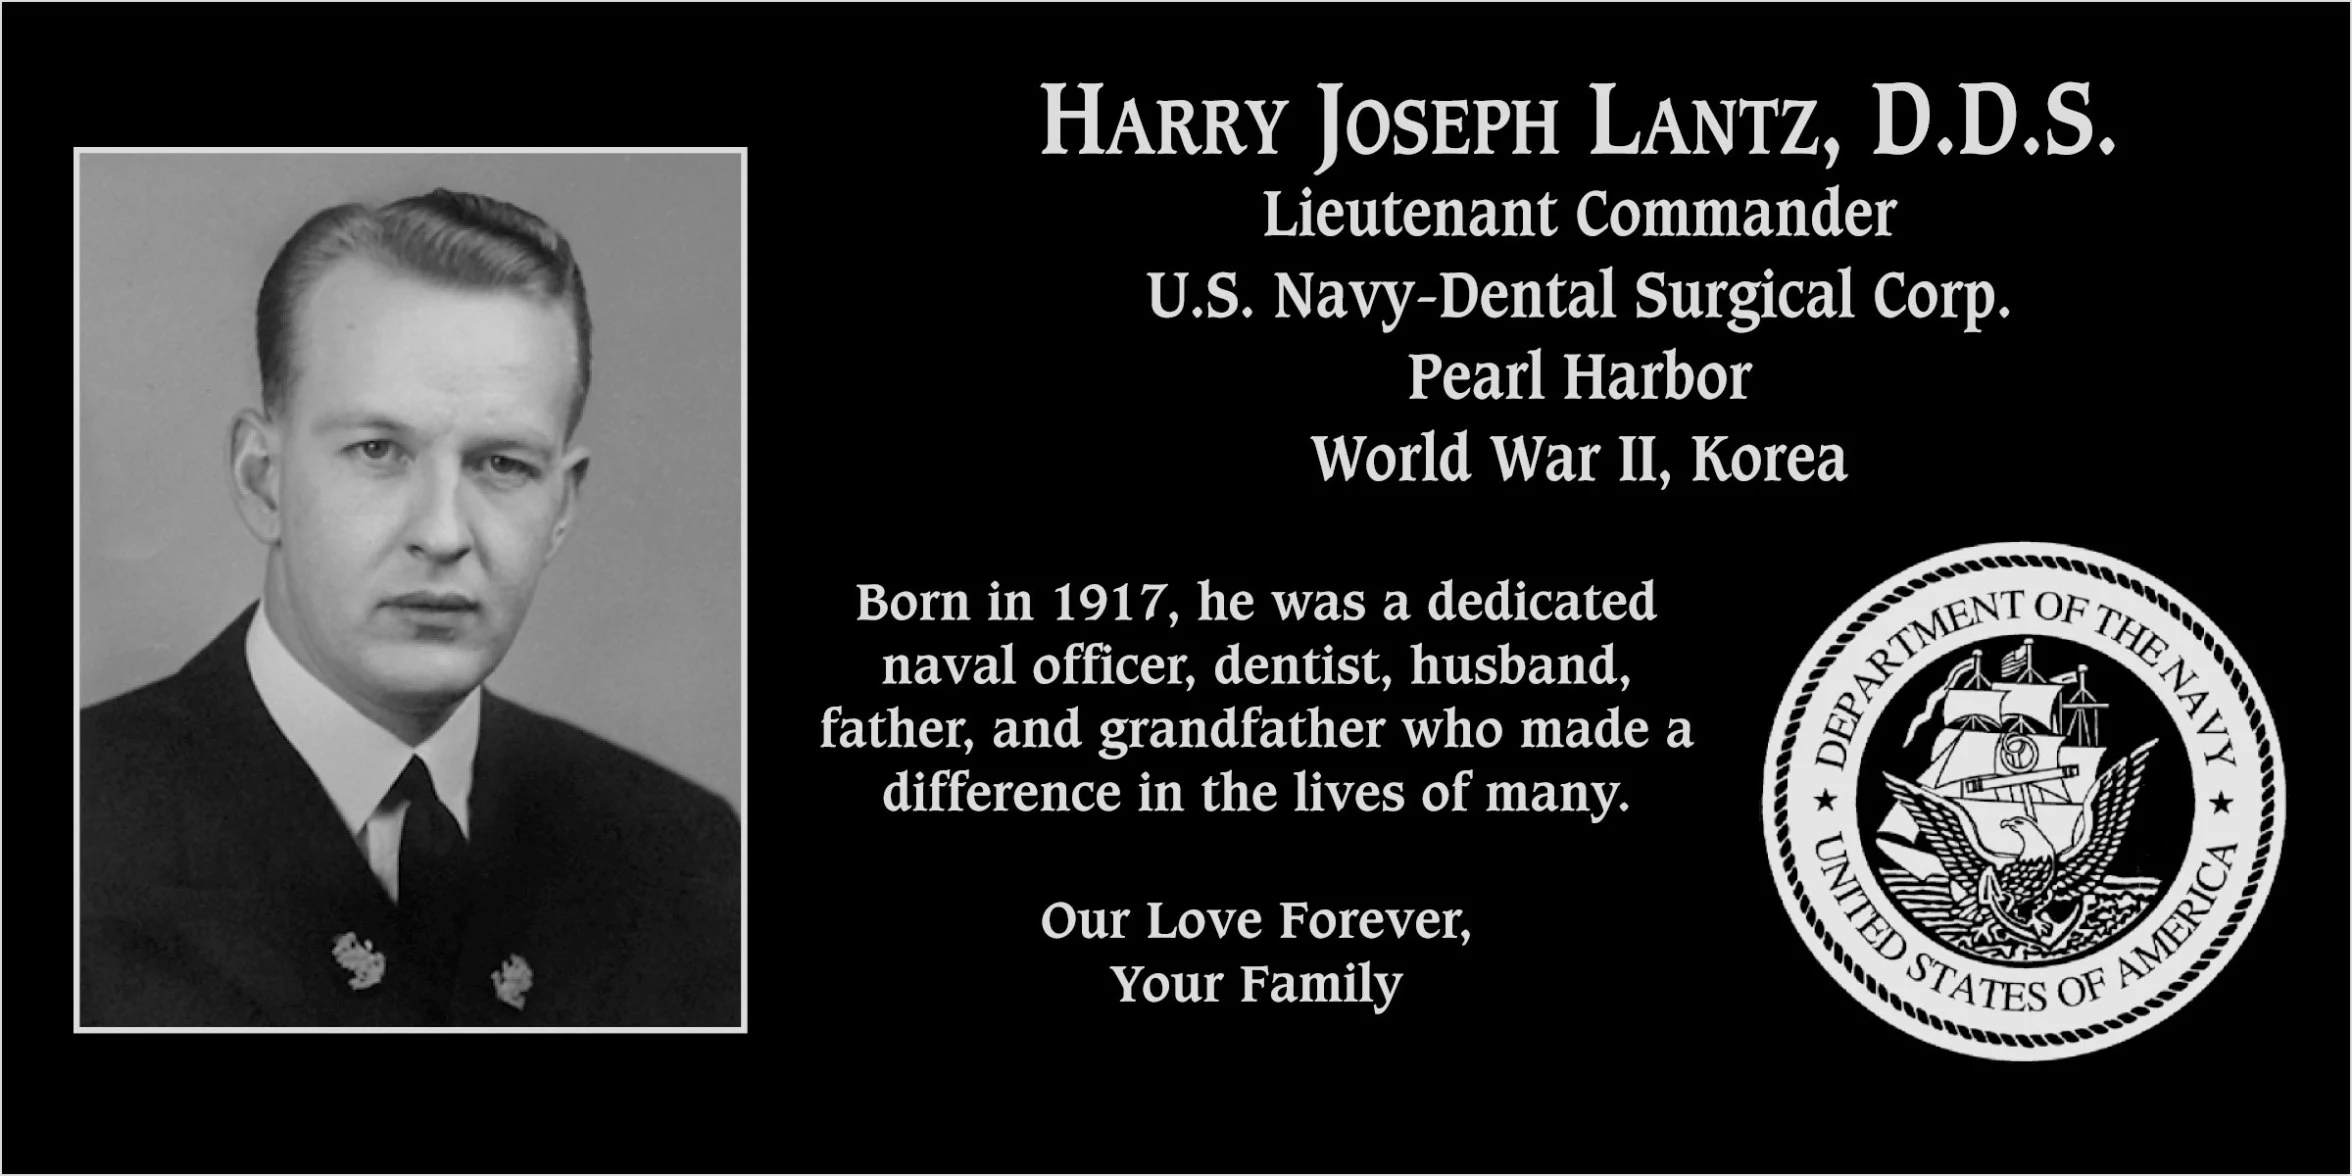 Harry Joseph Lantz